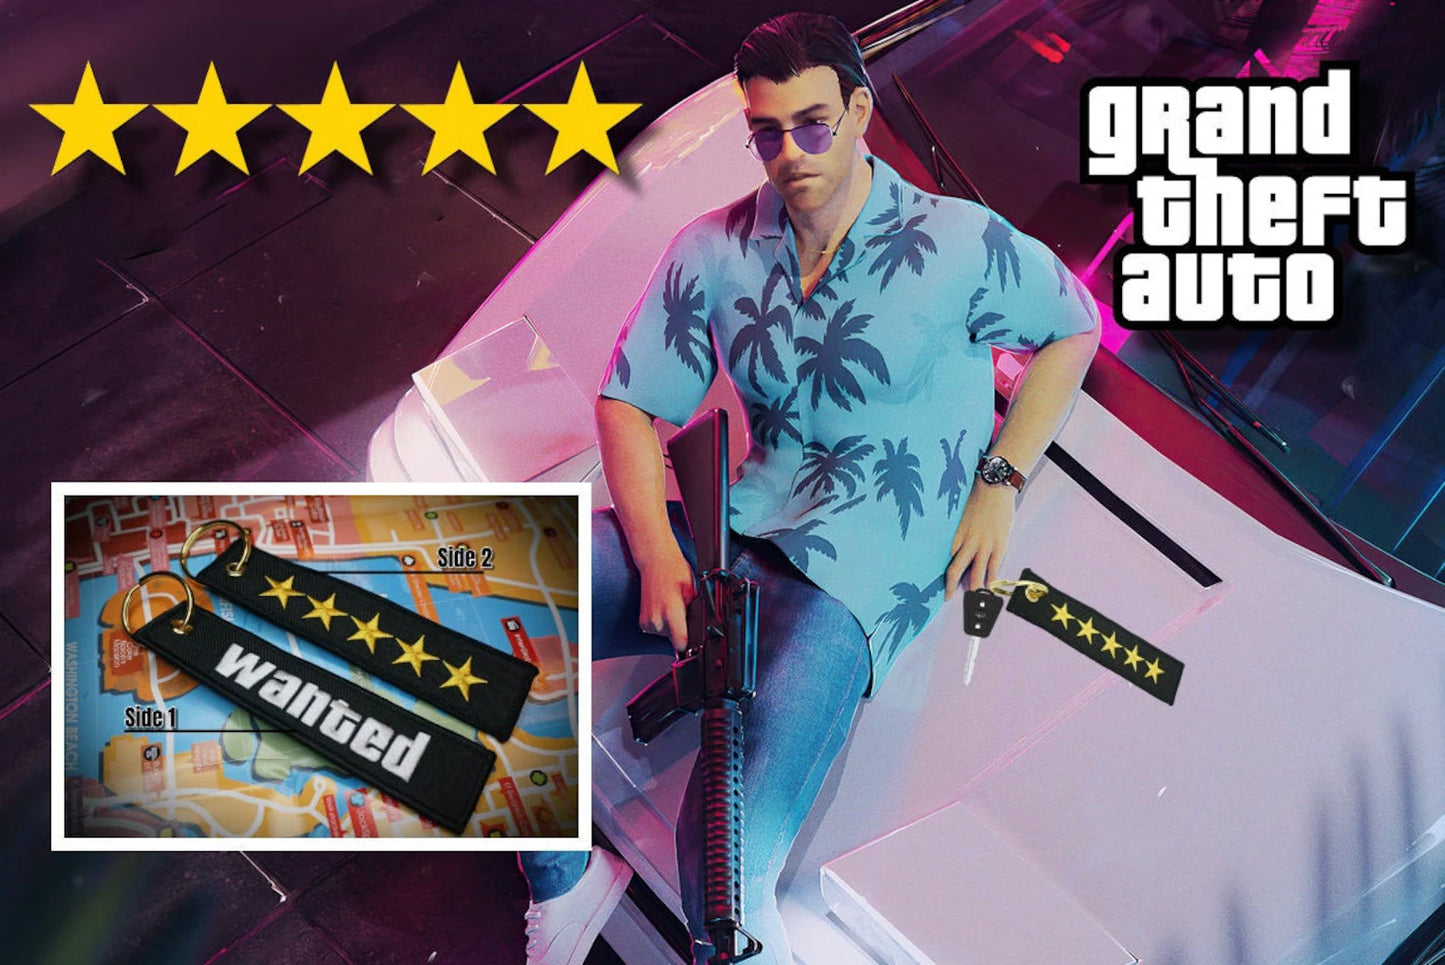 Porte-clés GTA Wanted Level, 5 étoiles, brodé, accessoire de style Grand Theft Auto